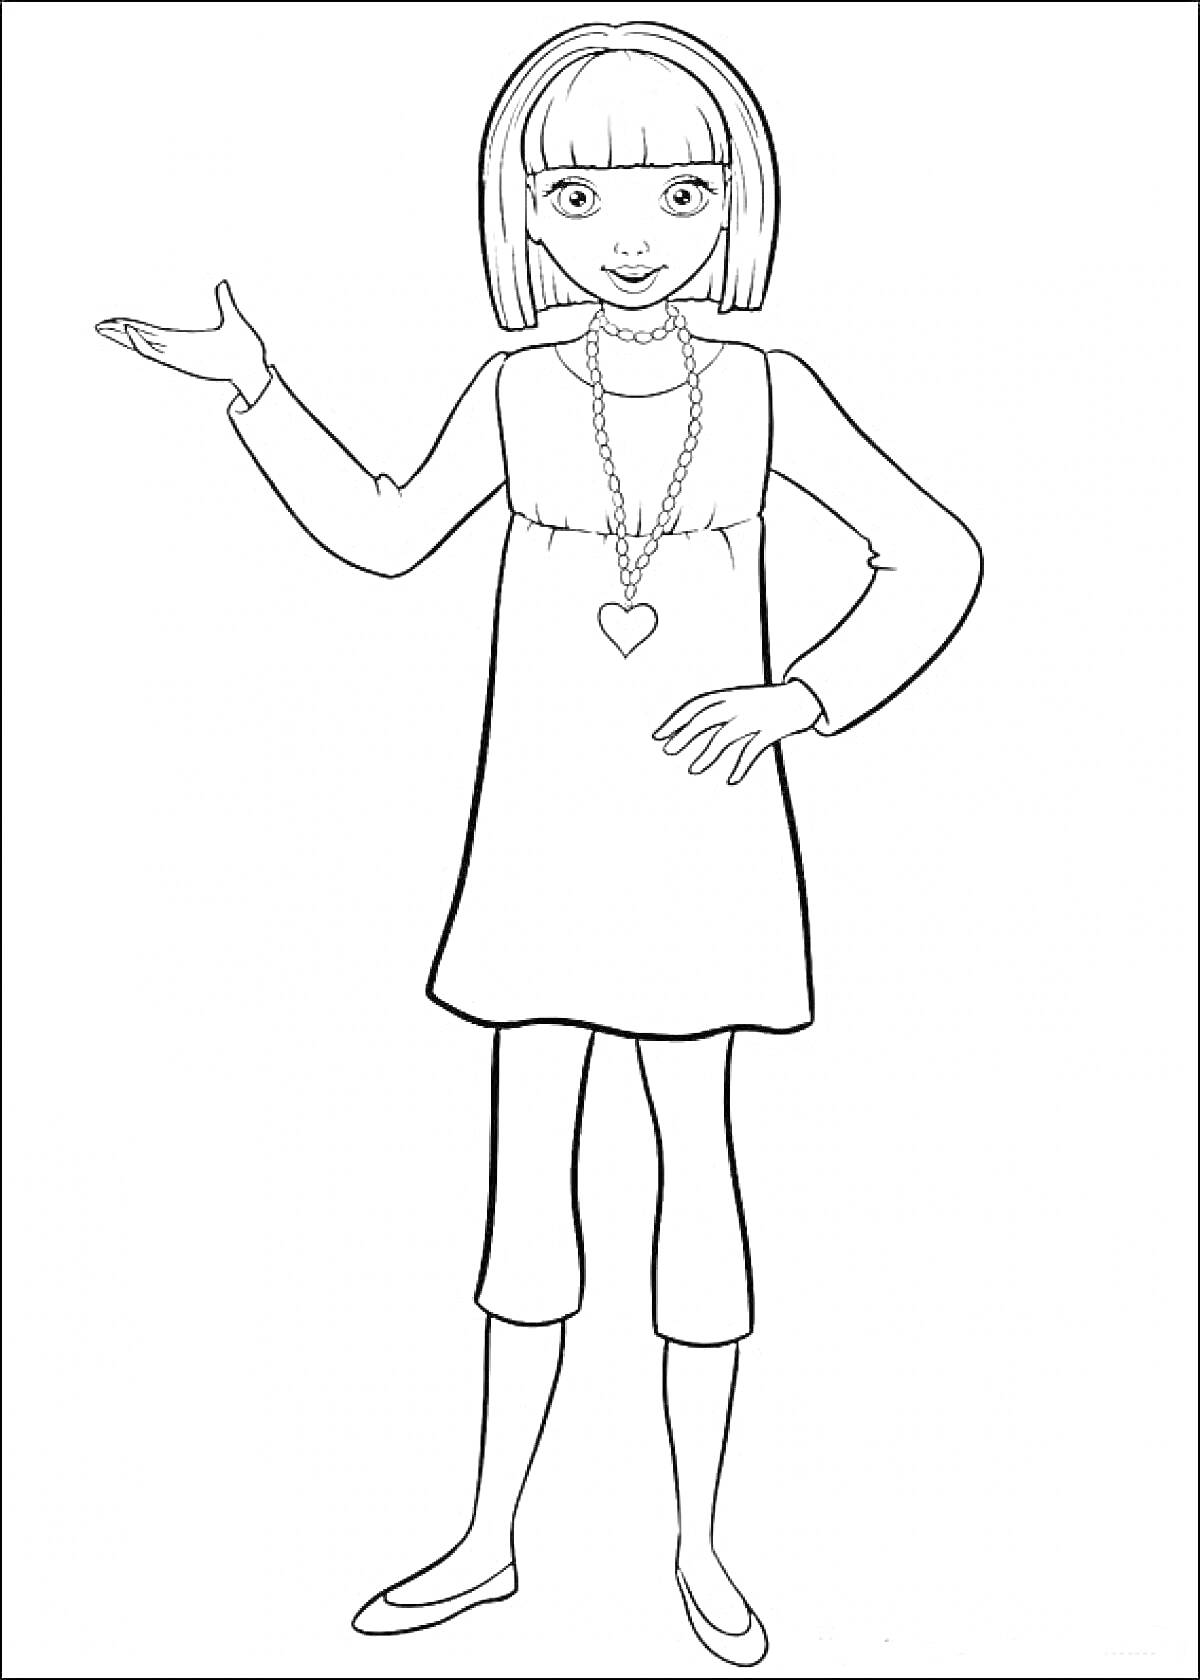 Раскраска Барби Дюймовочка в платье и брюках, с ожерельем в форме сердца, смотрит вперед, подняв одну руку